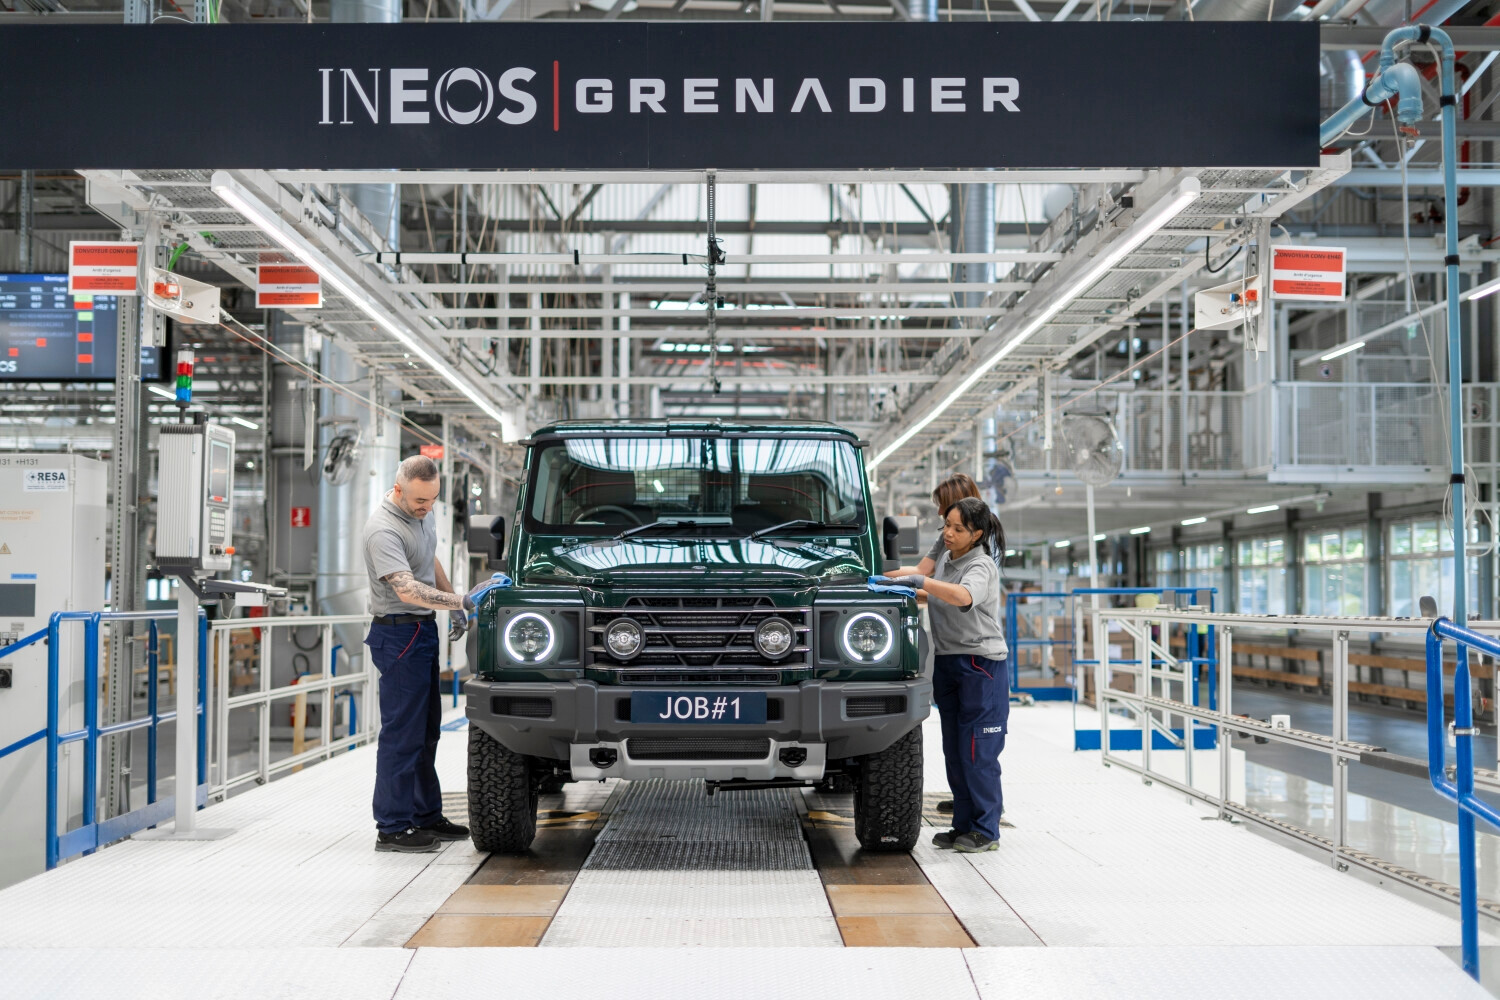 Die ersten Ineos Grenadier wurden laut Hersteller im Oktober produziert und im Dezember ausgeliefert.